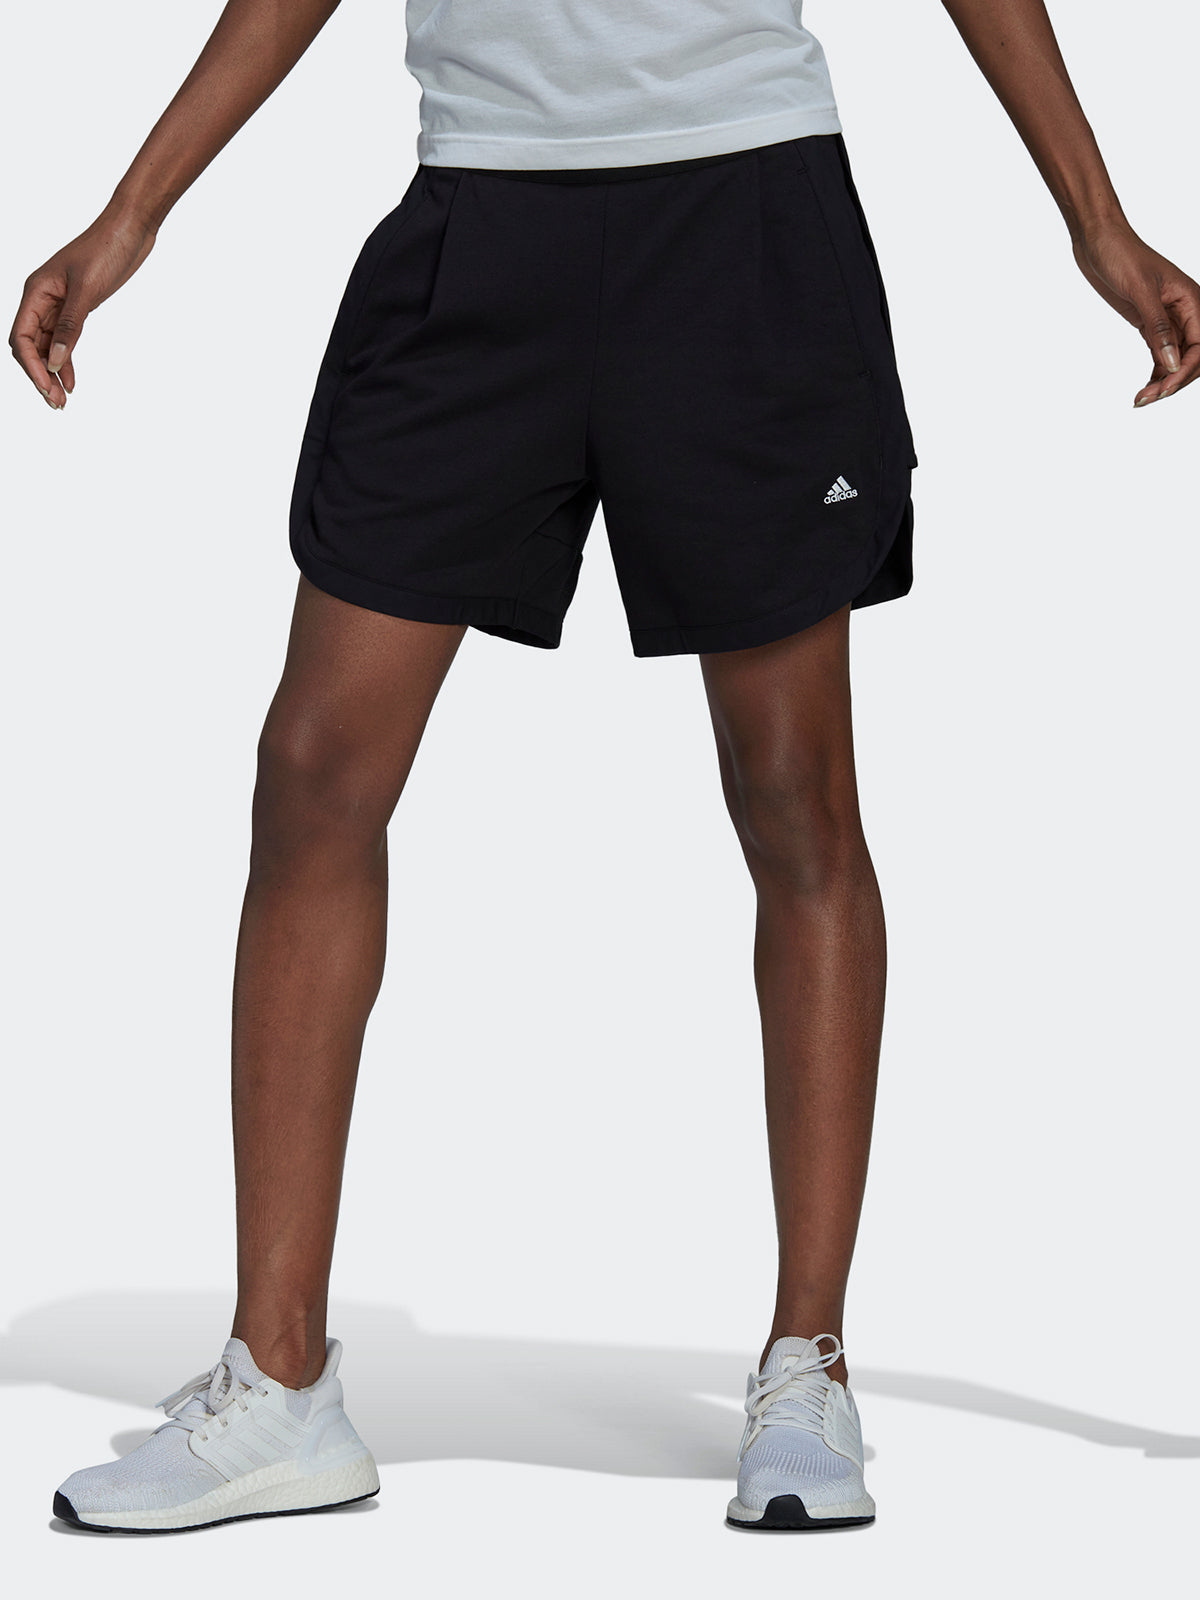 מכנסי ספורט קצרים עם לוגו רקום / נשים- adidas performance|אדידס פרפורמנס